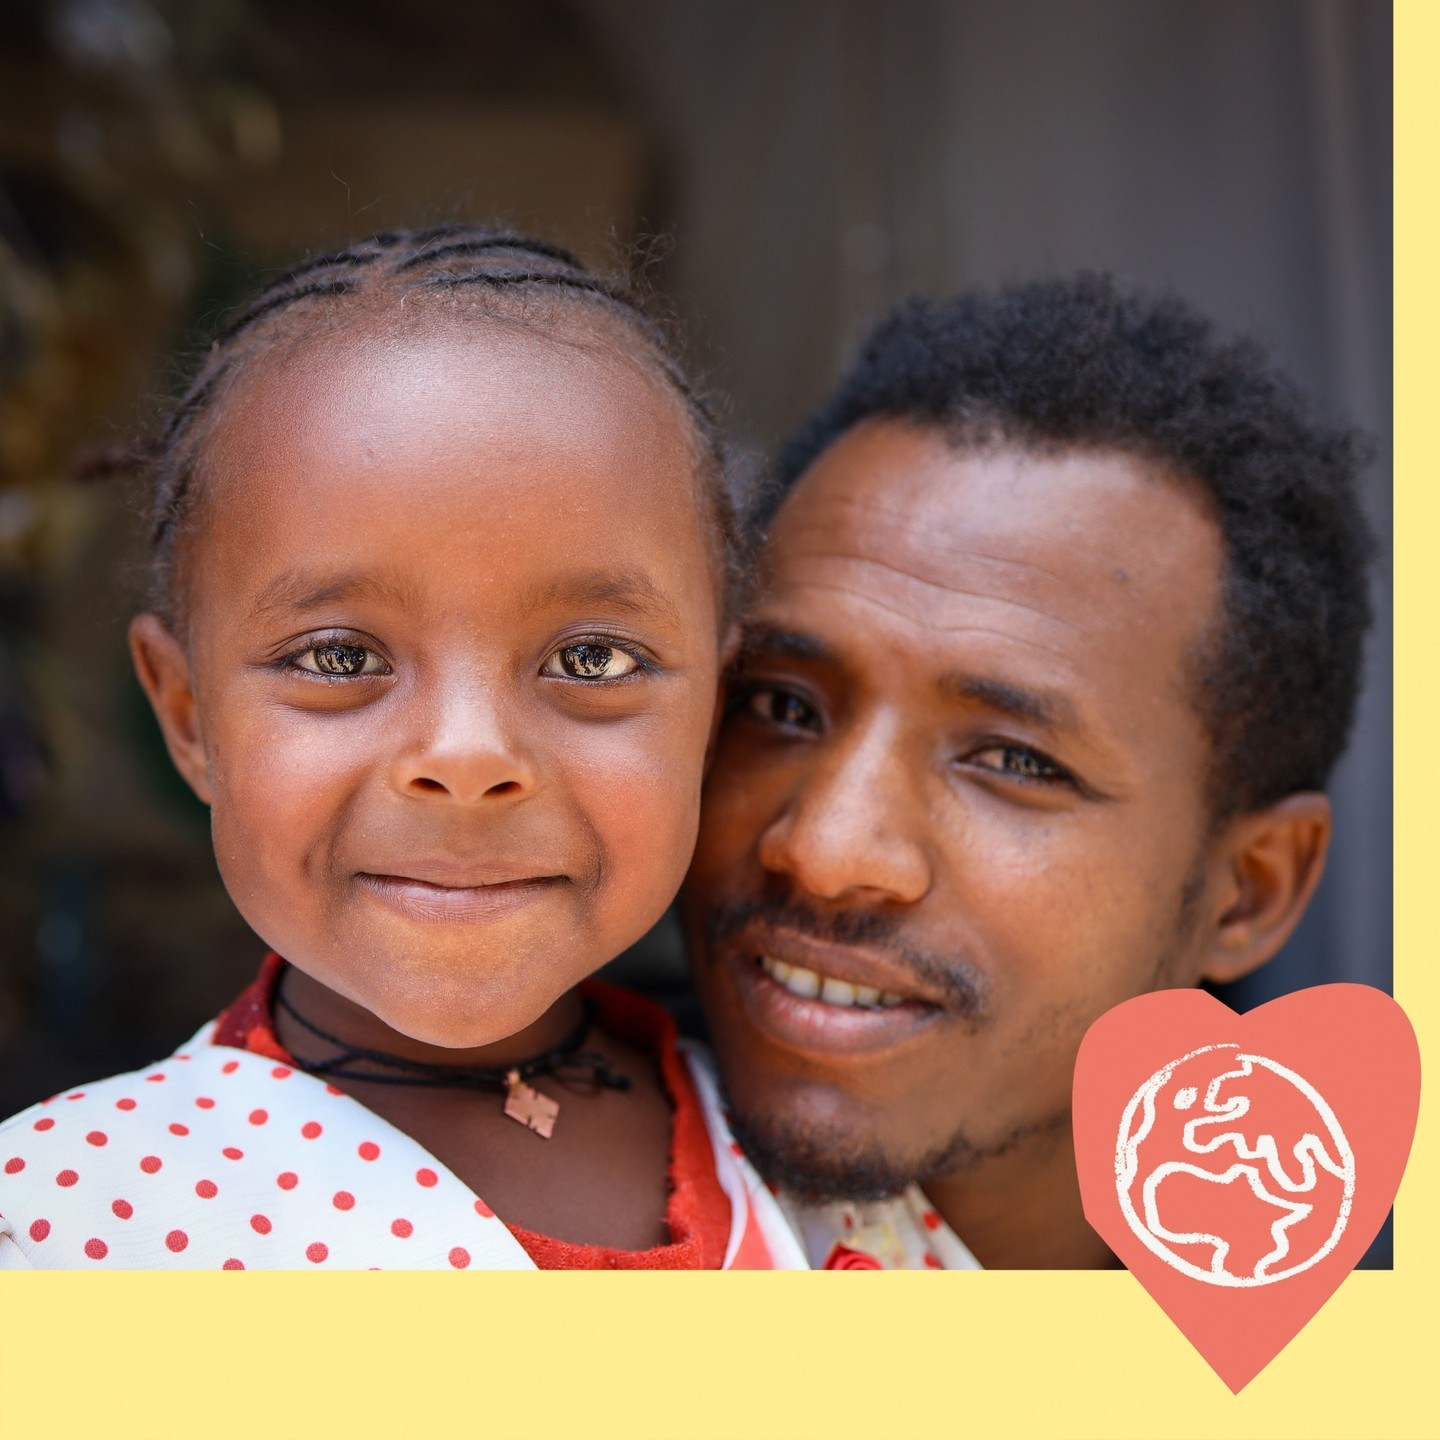 Nytt hopp för familjer i Etiopien!⁠
⁠
Varje år får 100-tals utsatta barn i Etiopien livsförvandlande stöd genom Hope for Children. Belen är ett av dem. Hon är 6 år gammal och innan hon fick plats på förskolan tillbringade hon dagarna på pappans arbetsplats, ett trångt litet väveri vid en stor trafikerad väg.⁠
⁠
– 	Min lön räckte inte till någon skolplats för Belen, så jag är väldigt tacksam att hon har fått plats hos Hope for Children nu, berättar pappa Abeje.⁠
⁠
Tack vare EFS mission får barn skolmat, utbildning och trygga platser att leka och växa upp på i bland annat östra Afrika och Indien. Vill du vara med och bära det arbetet?⁠
⁠
Swisha till 900 99 03 eller ge via bankgiro 900-9903 och skriv EFS mission i meddelandet.⁠
⁠
Tack för din gåva!